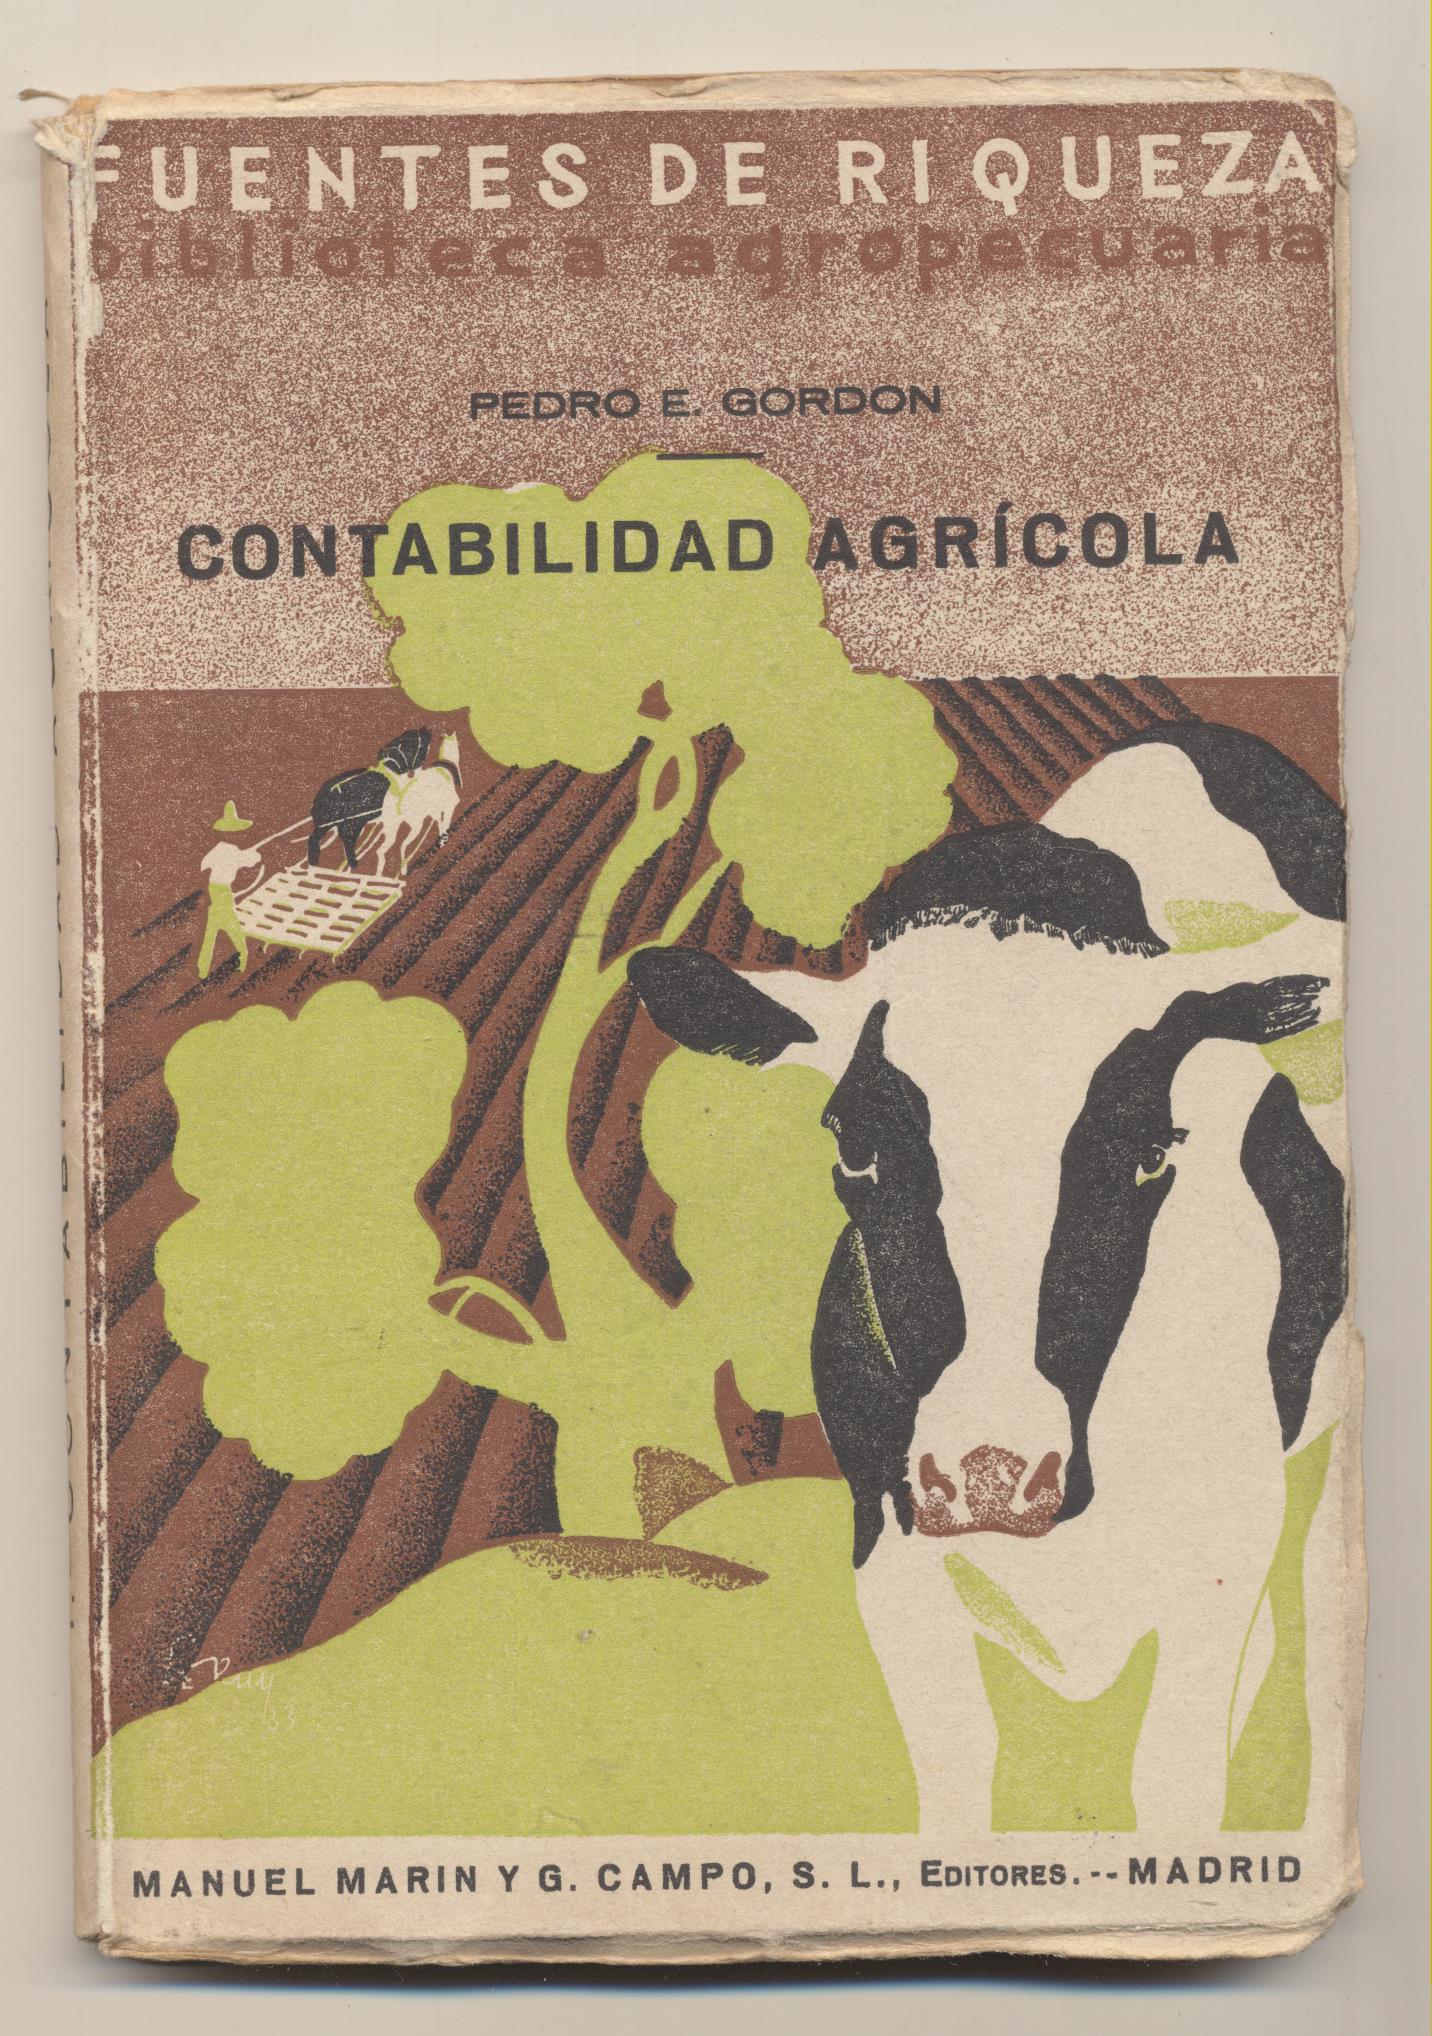 Pedro E. Gordon. Contabilidad Agrícola. Manuel Marín y G. Campos Editores. Madrid 1933